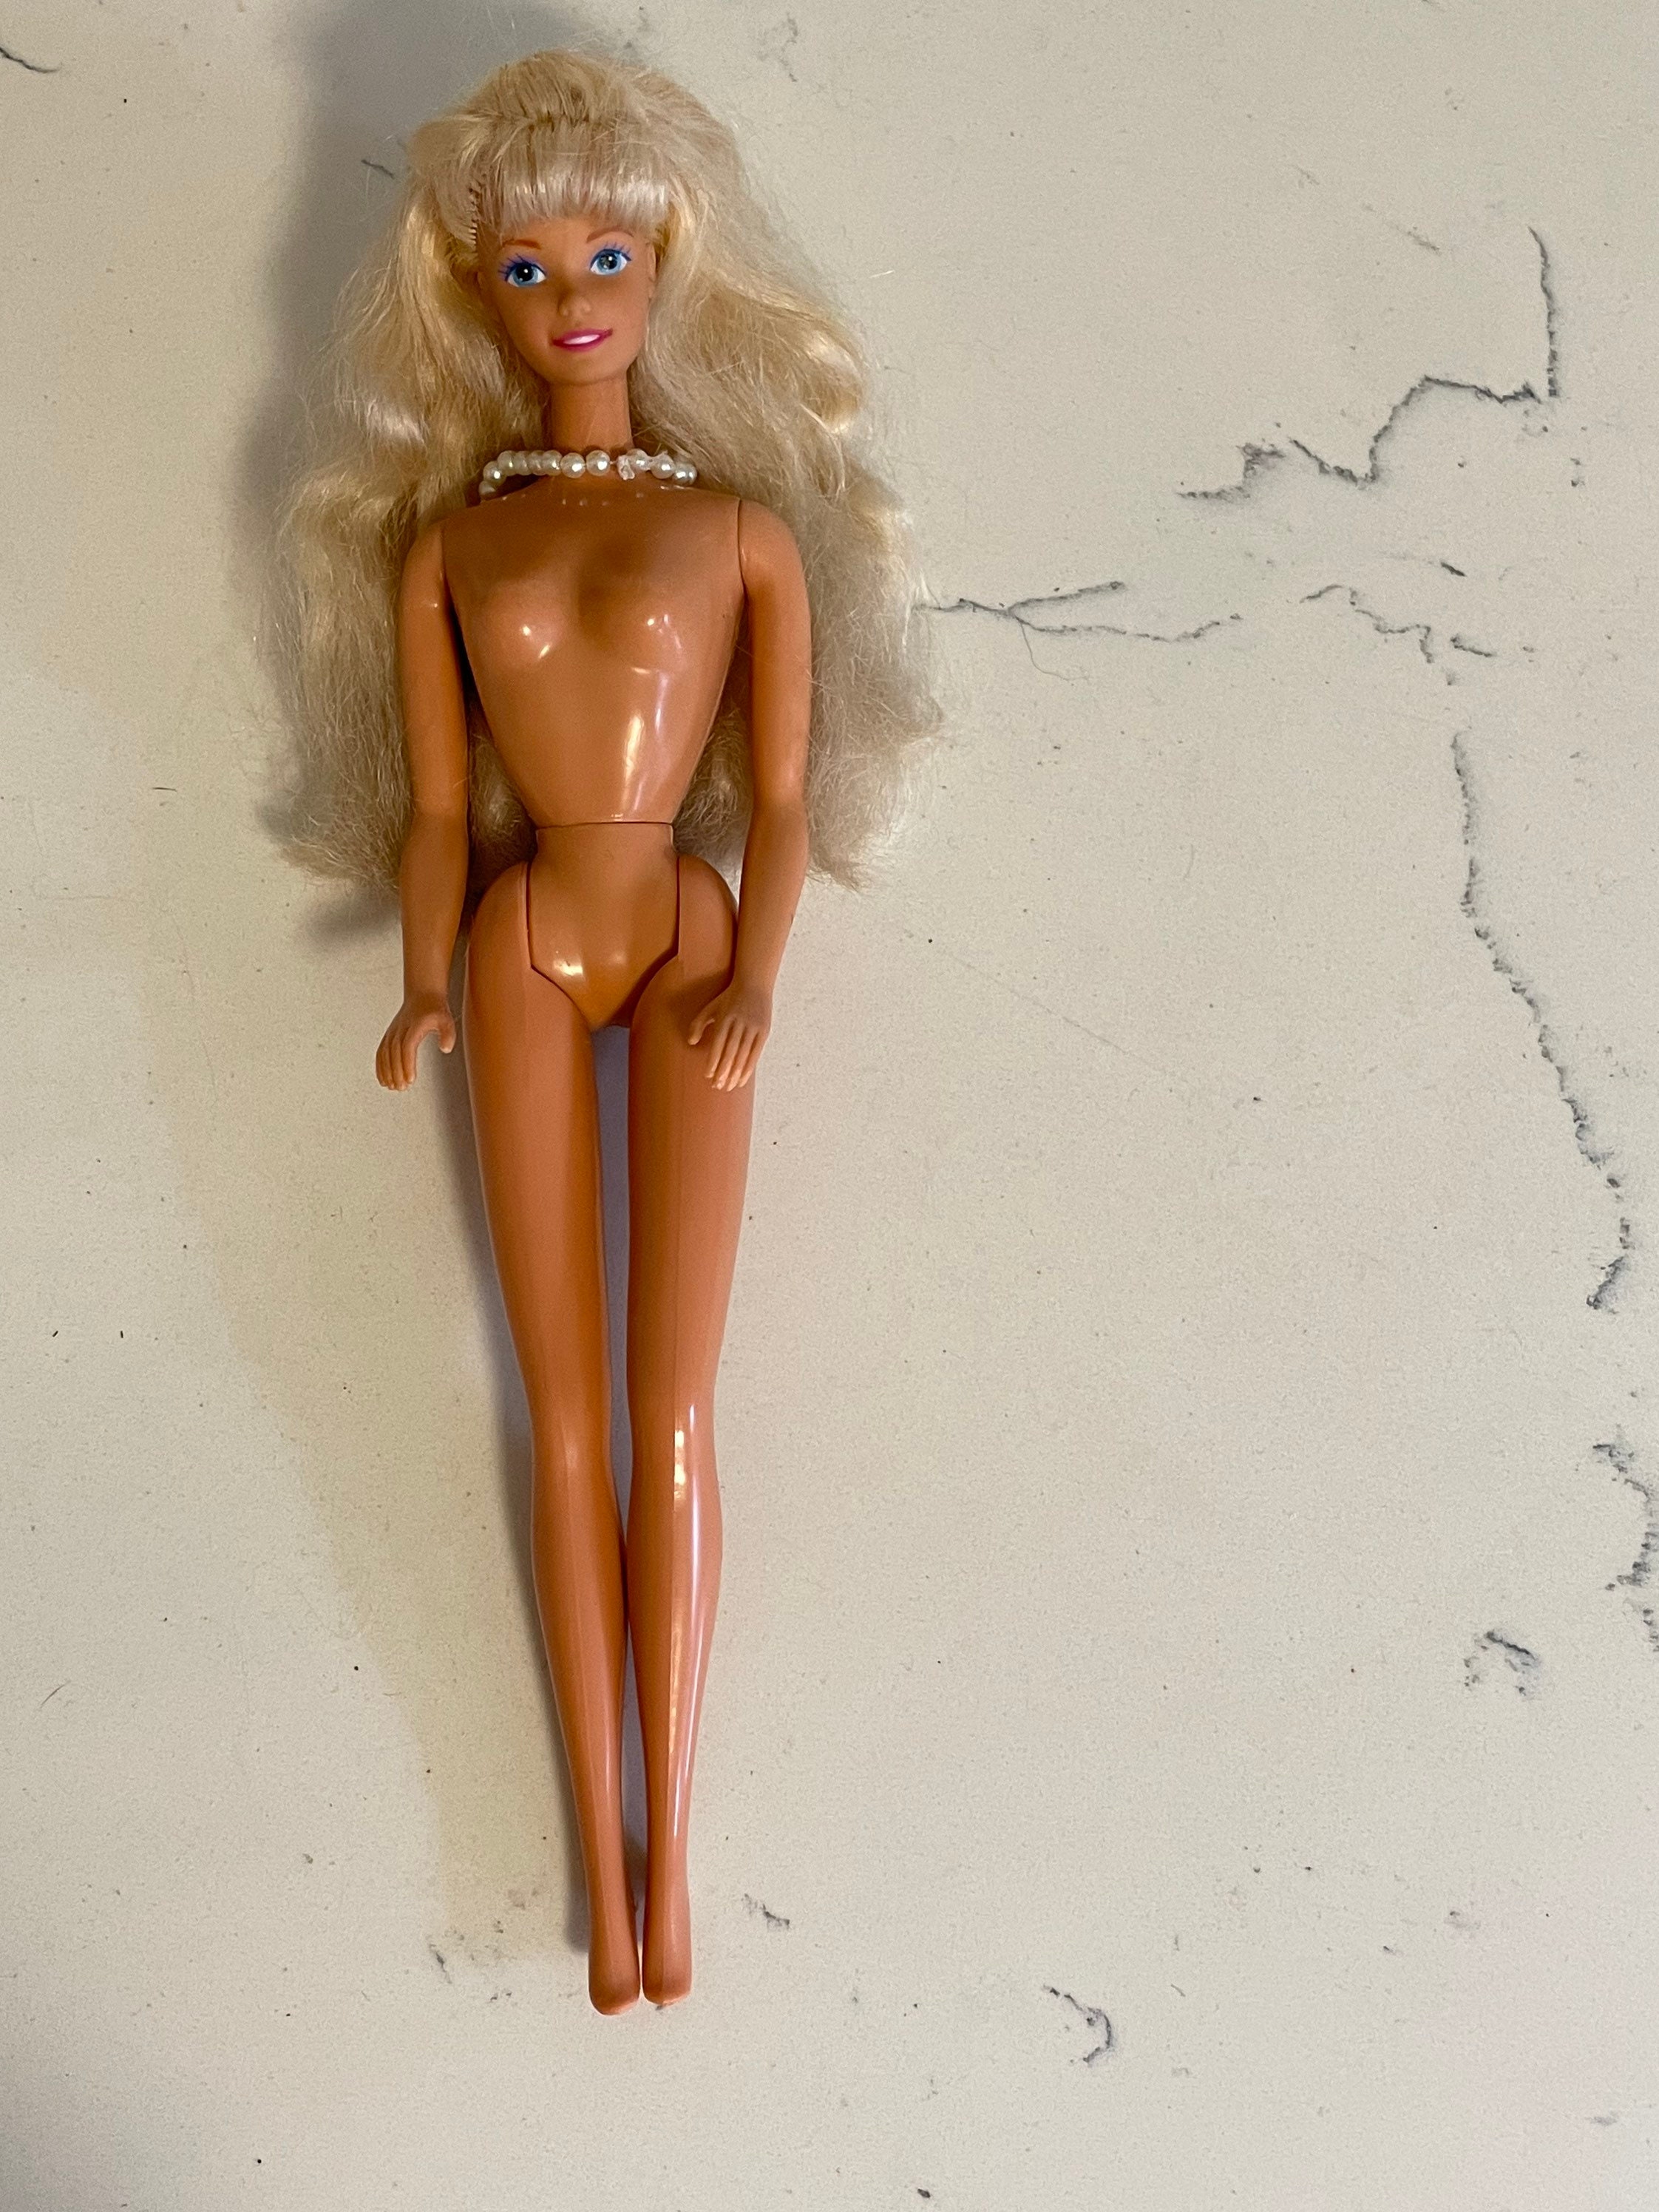 erwt Resoneer Uitsluiten Vintage Mattel Barbie 1966 Made in Malaysia - Etsy